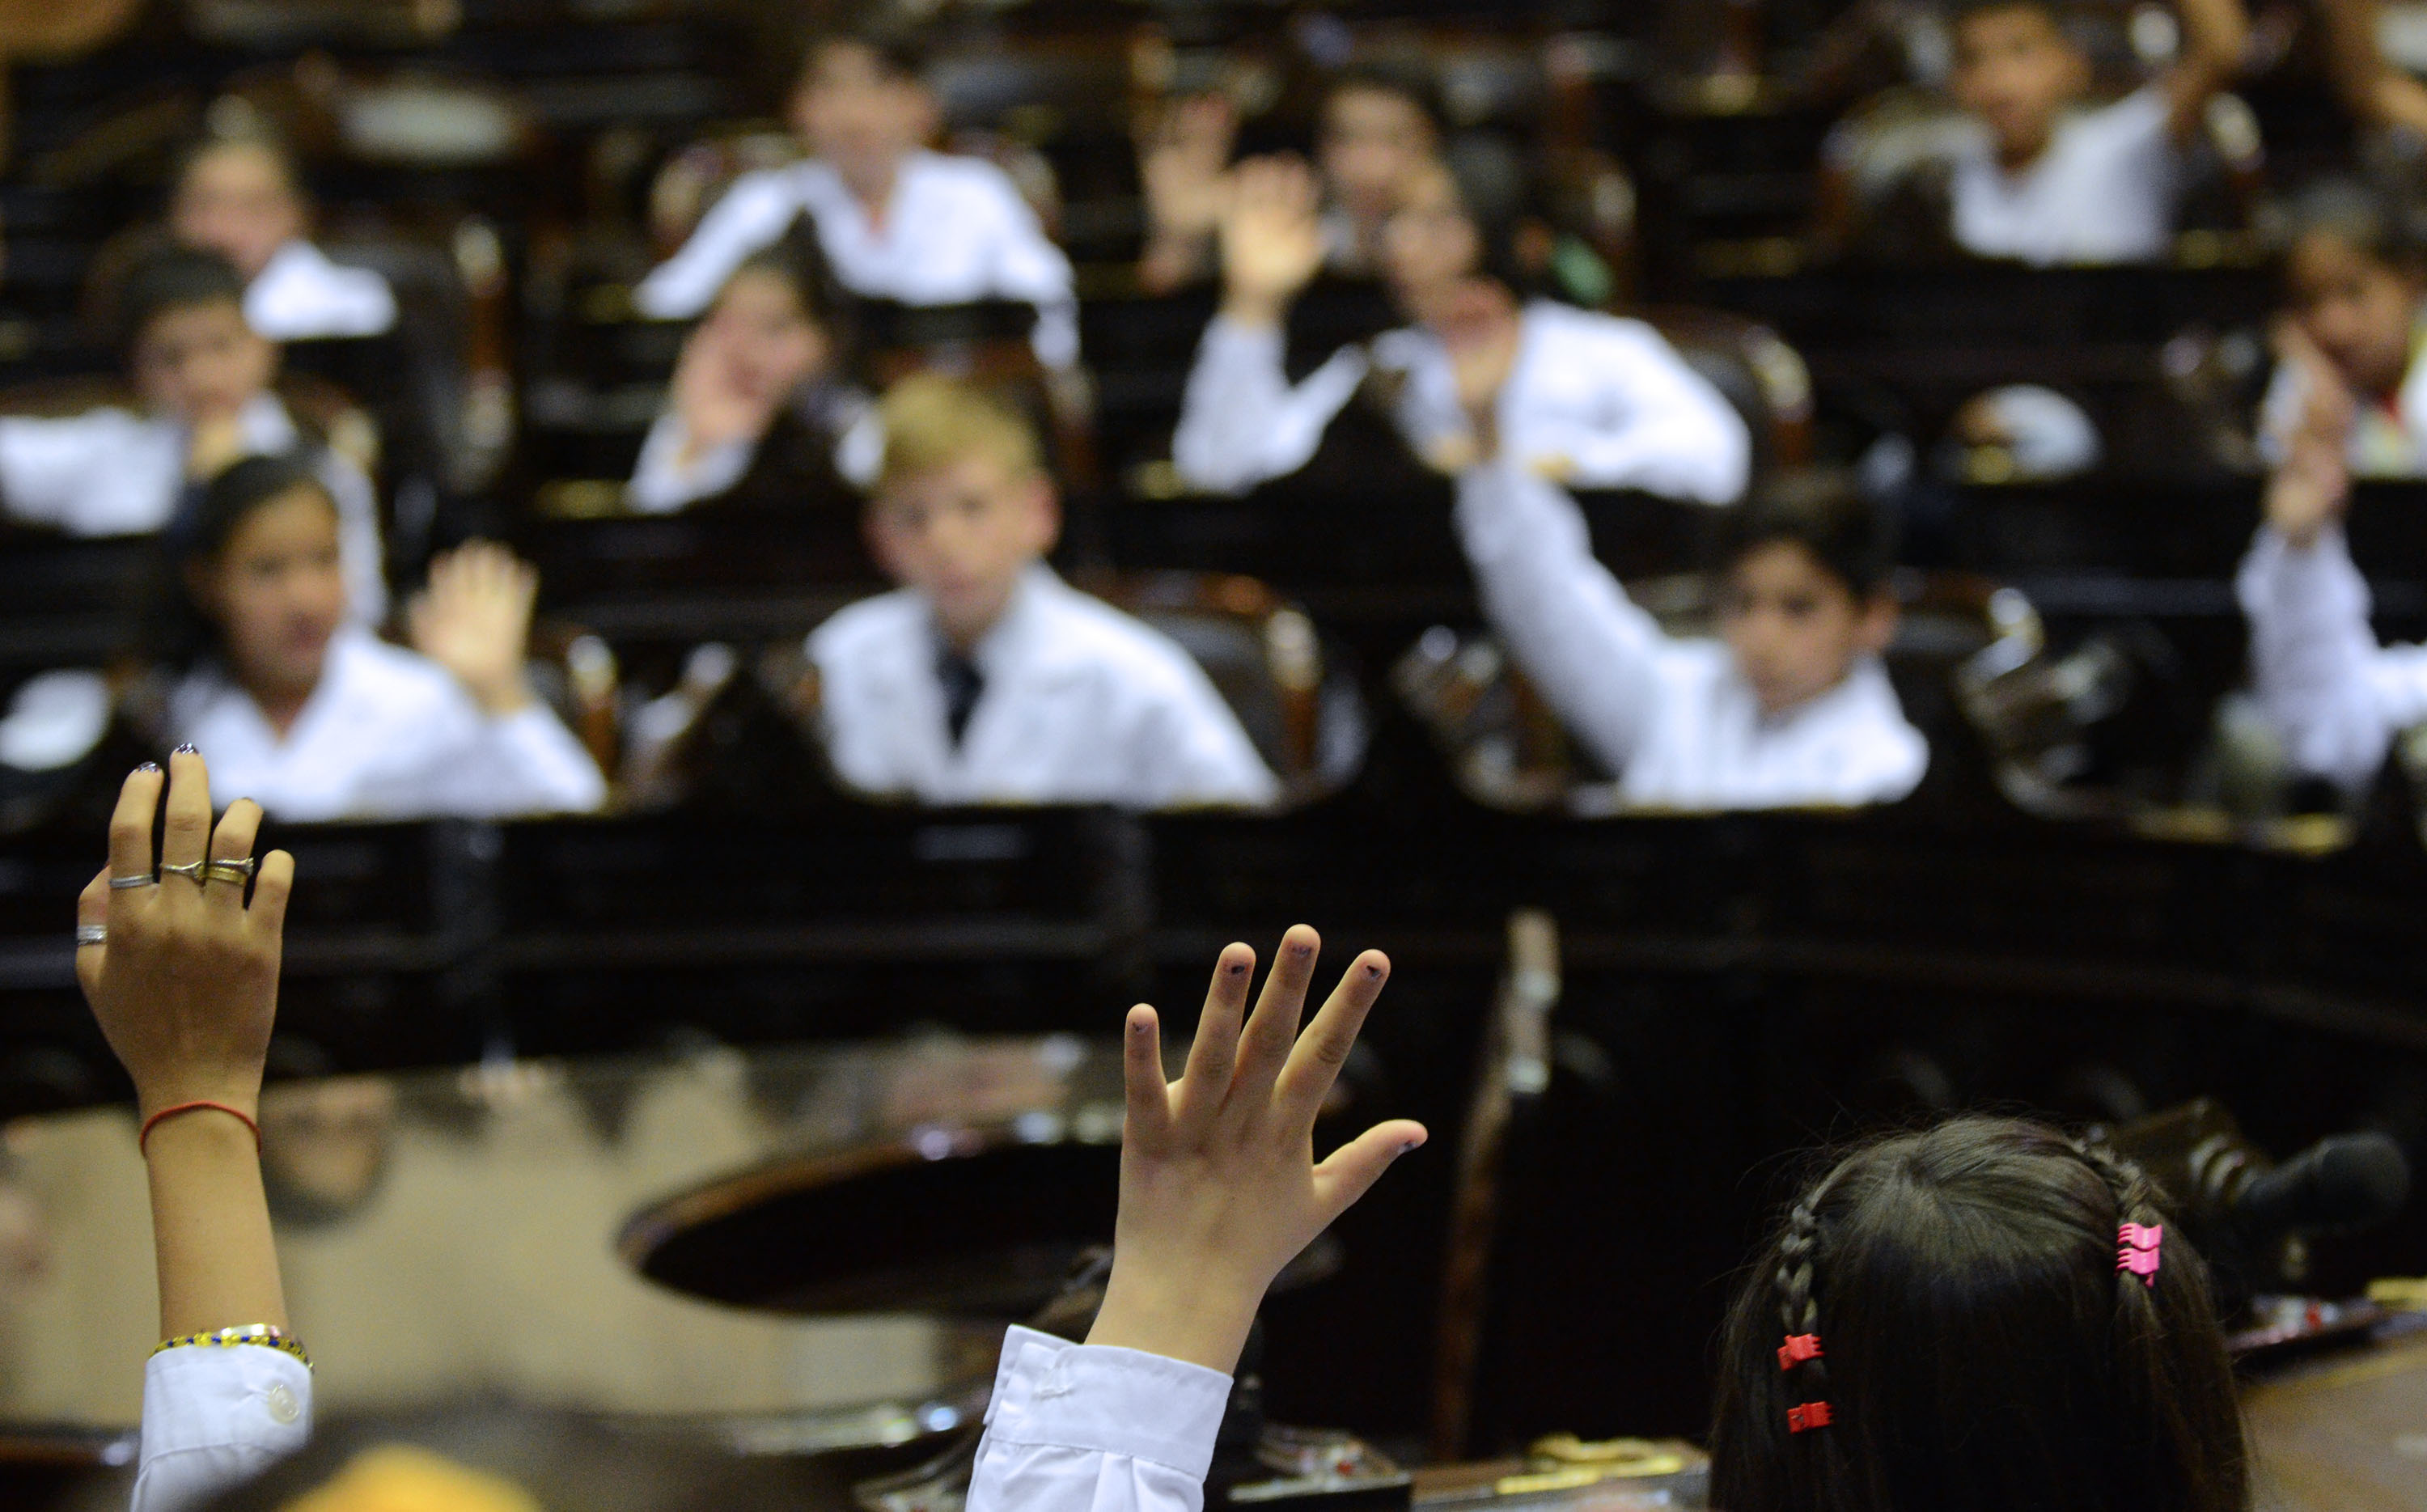 El Parlamento nacional infantil sesionando (Sofía 